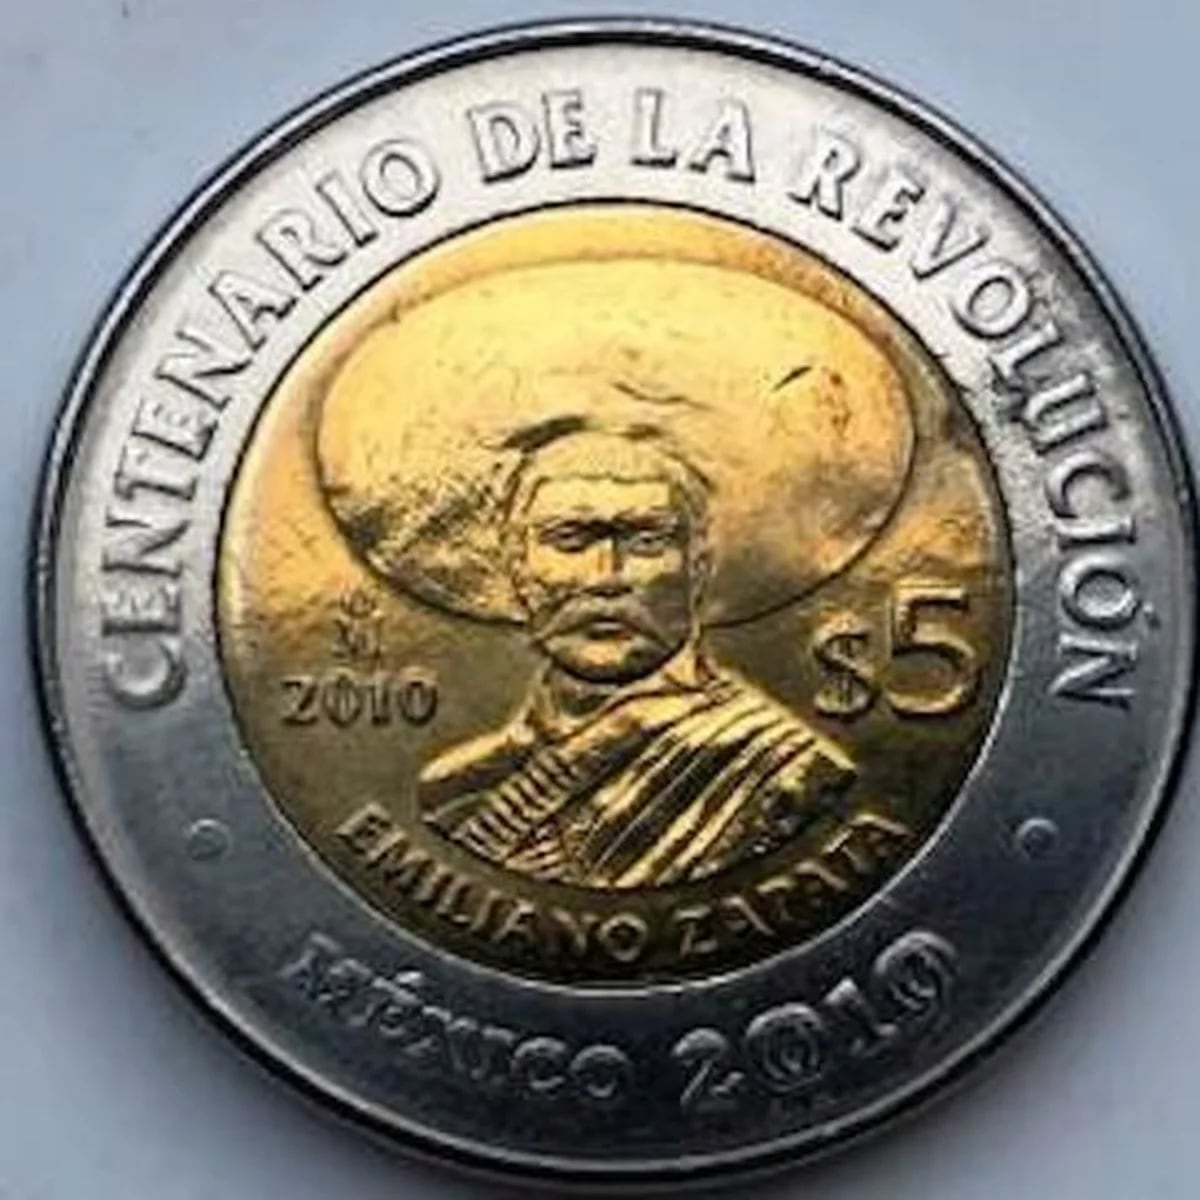 Monedas de 5 pesos valiosas del bicentenario y centenario: ¿Tienes una?